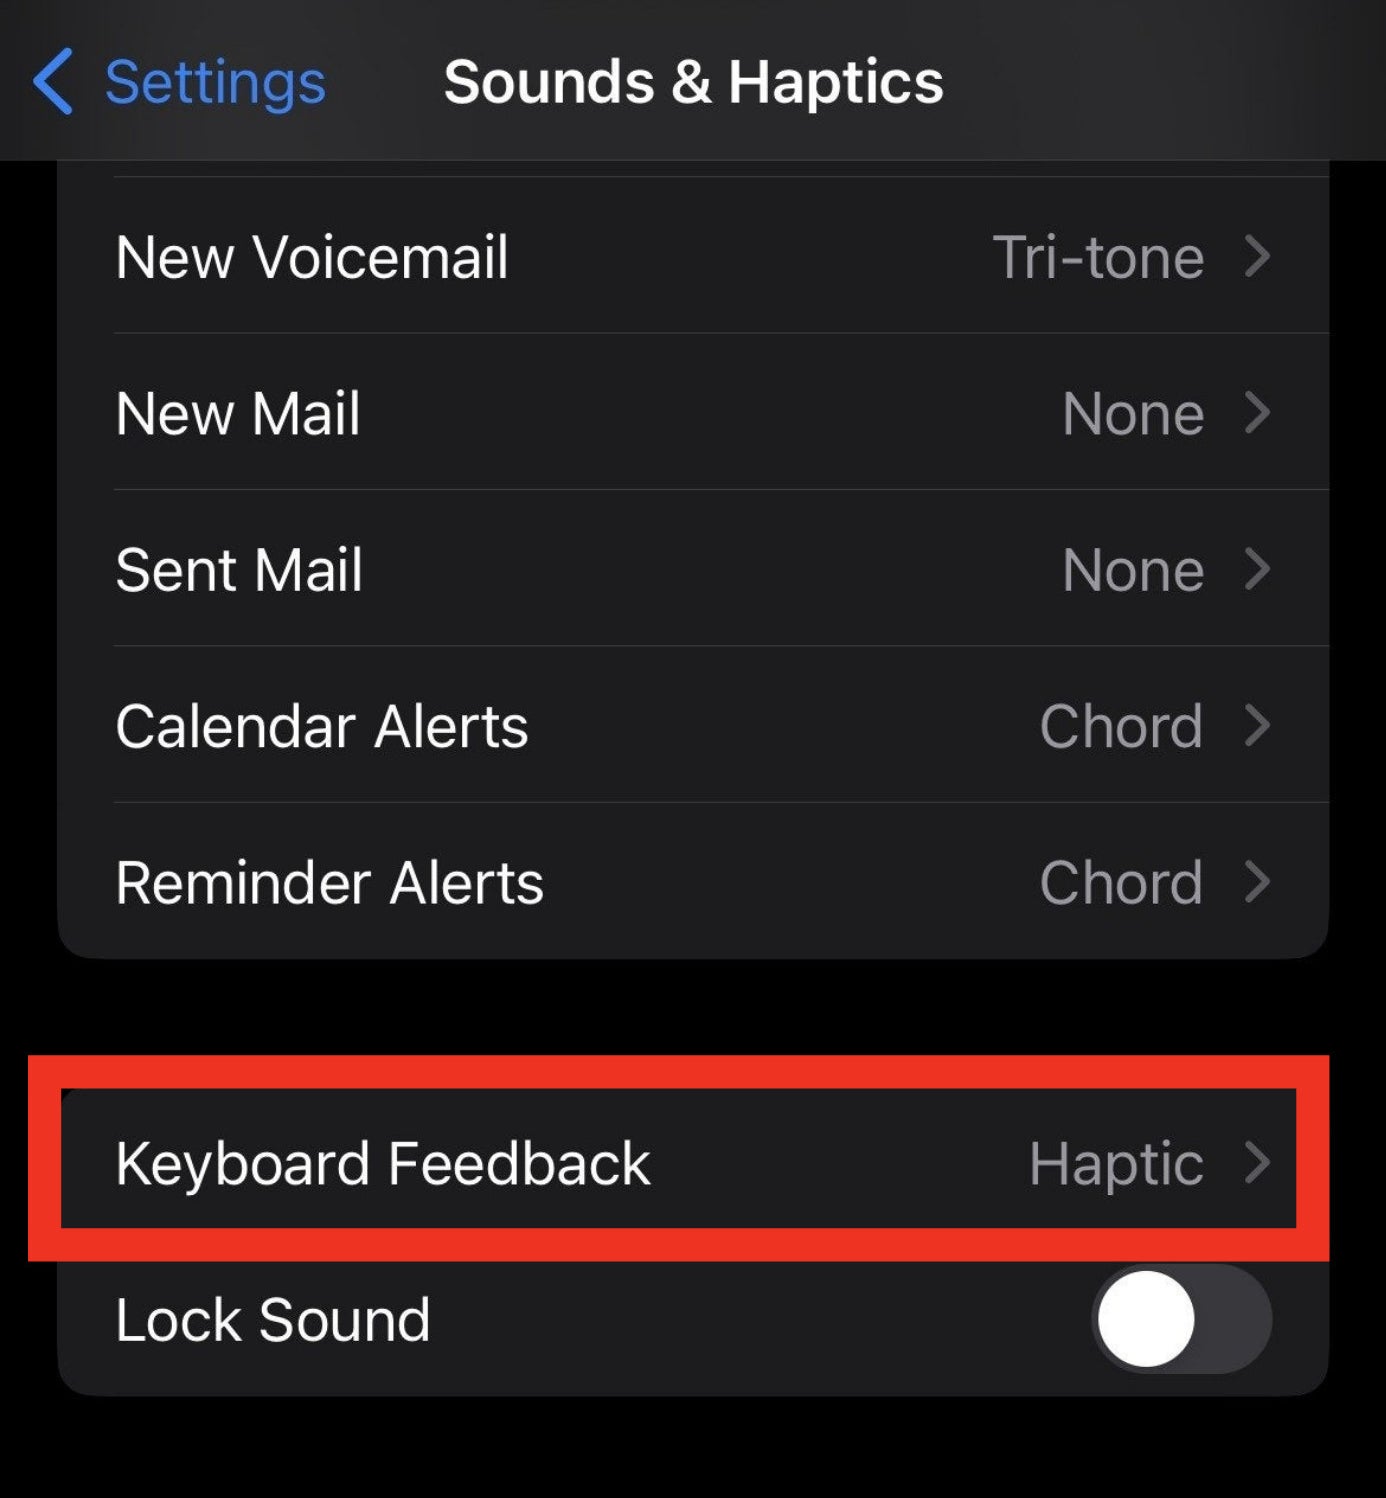 keyboard feedback option